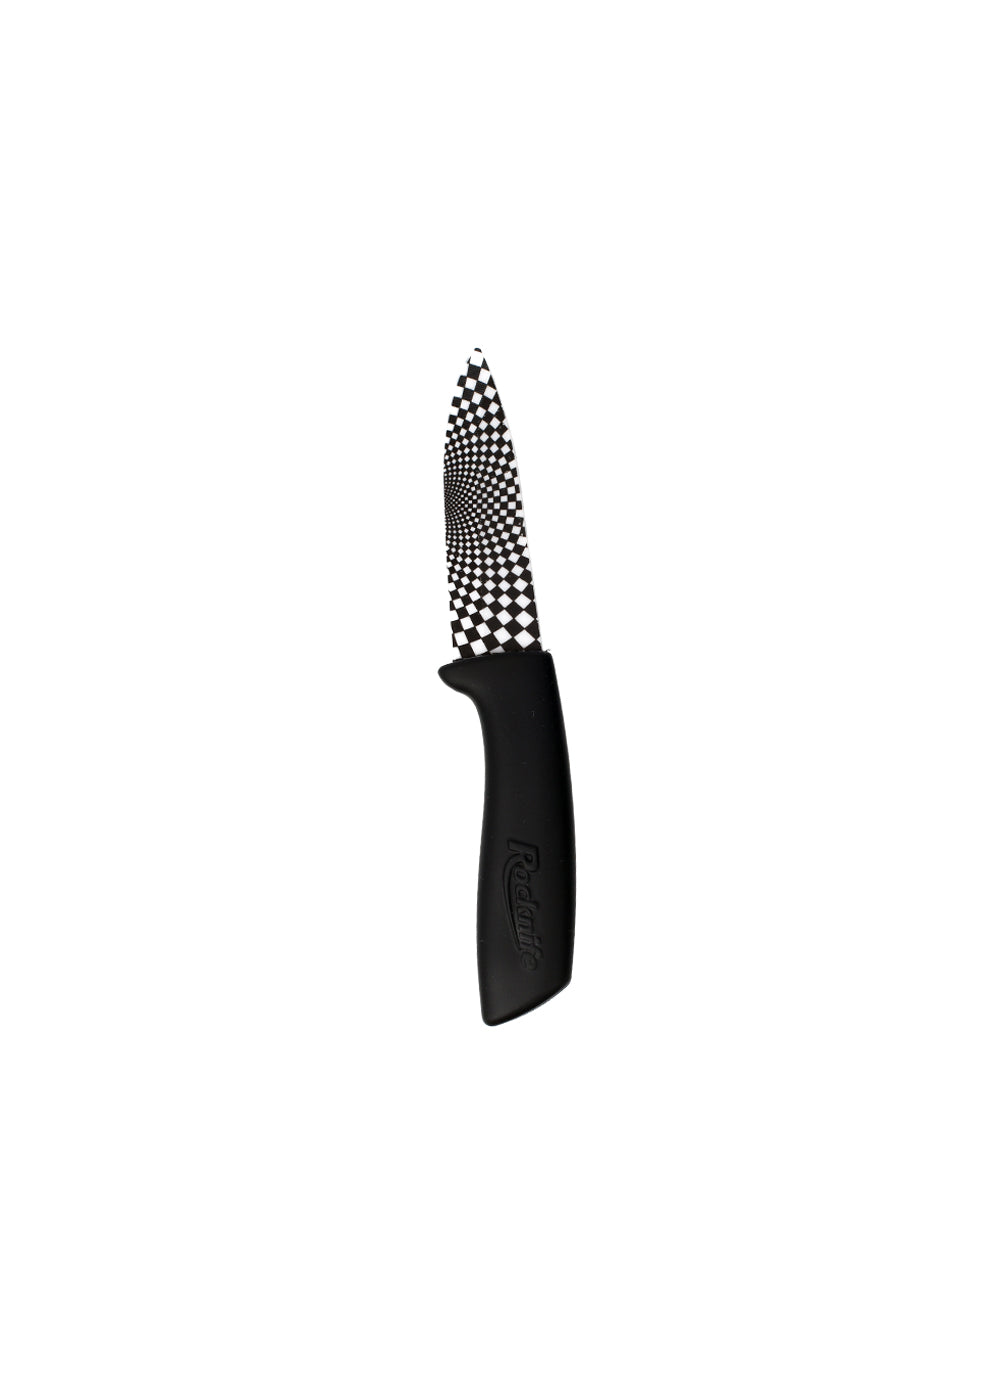 3 Inch Ceramic Kitchen Knife - Black